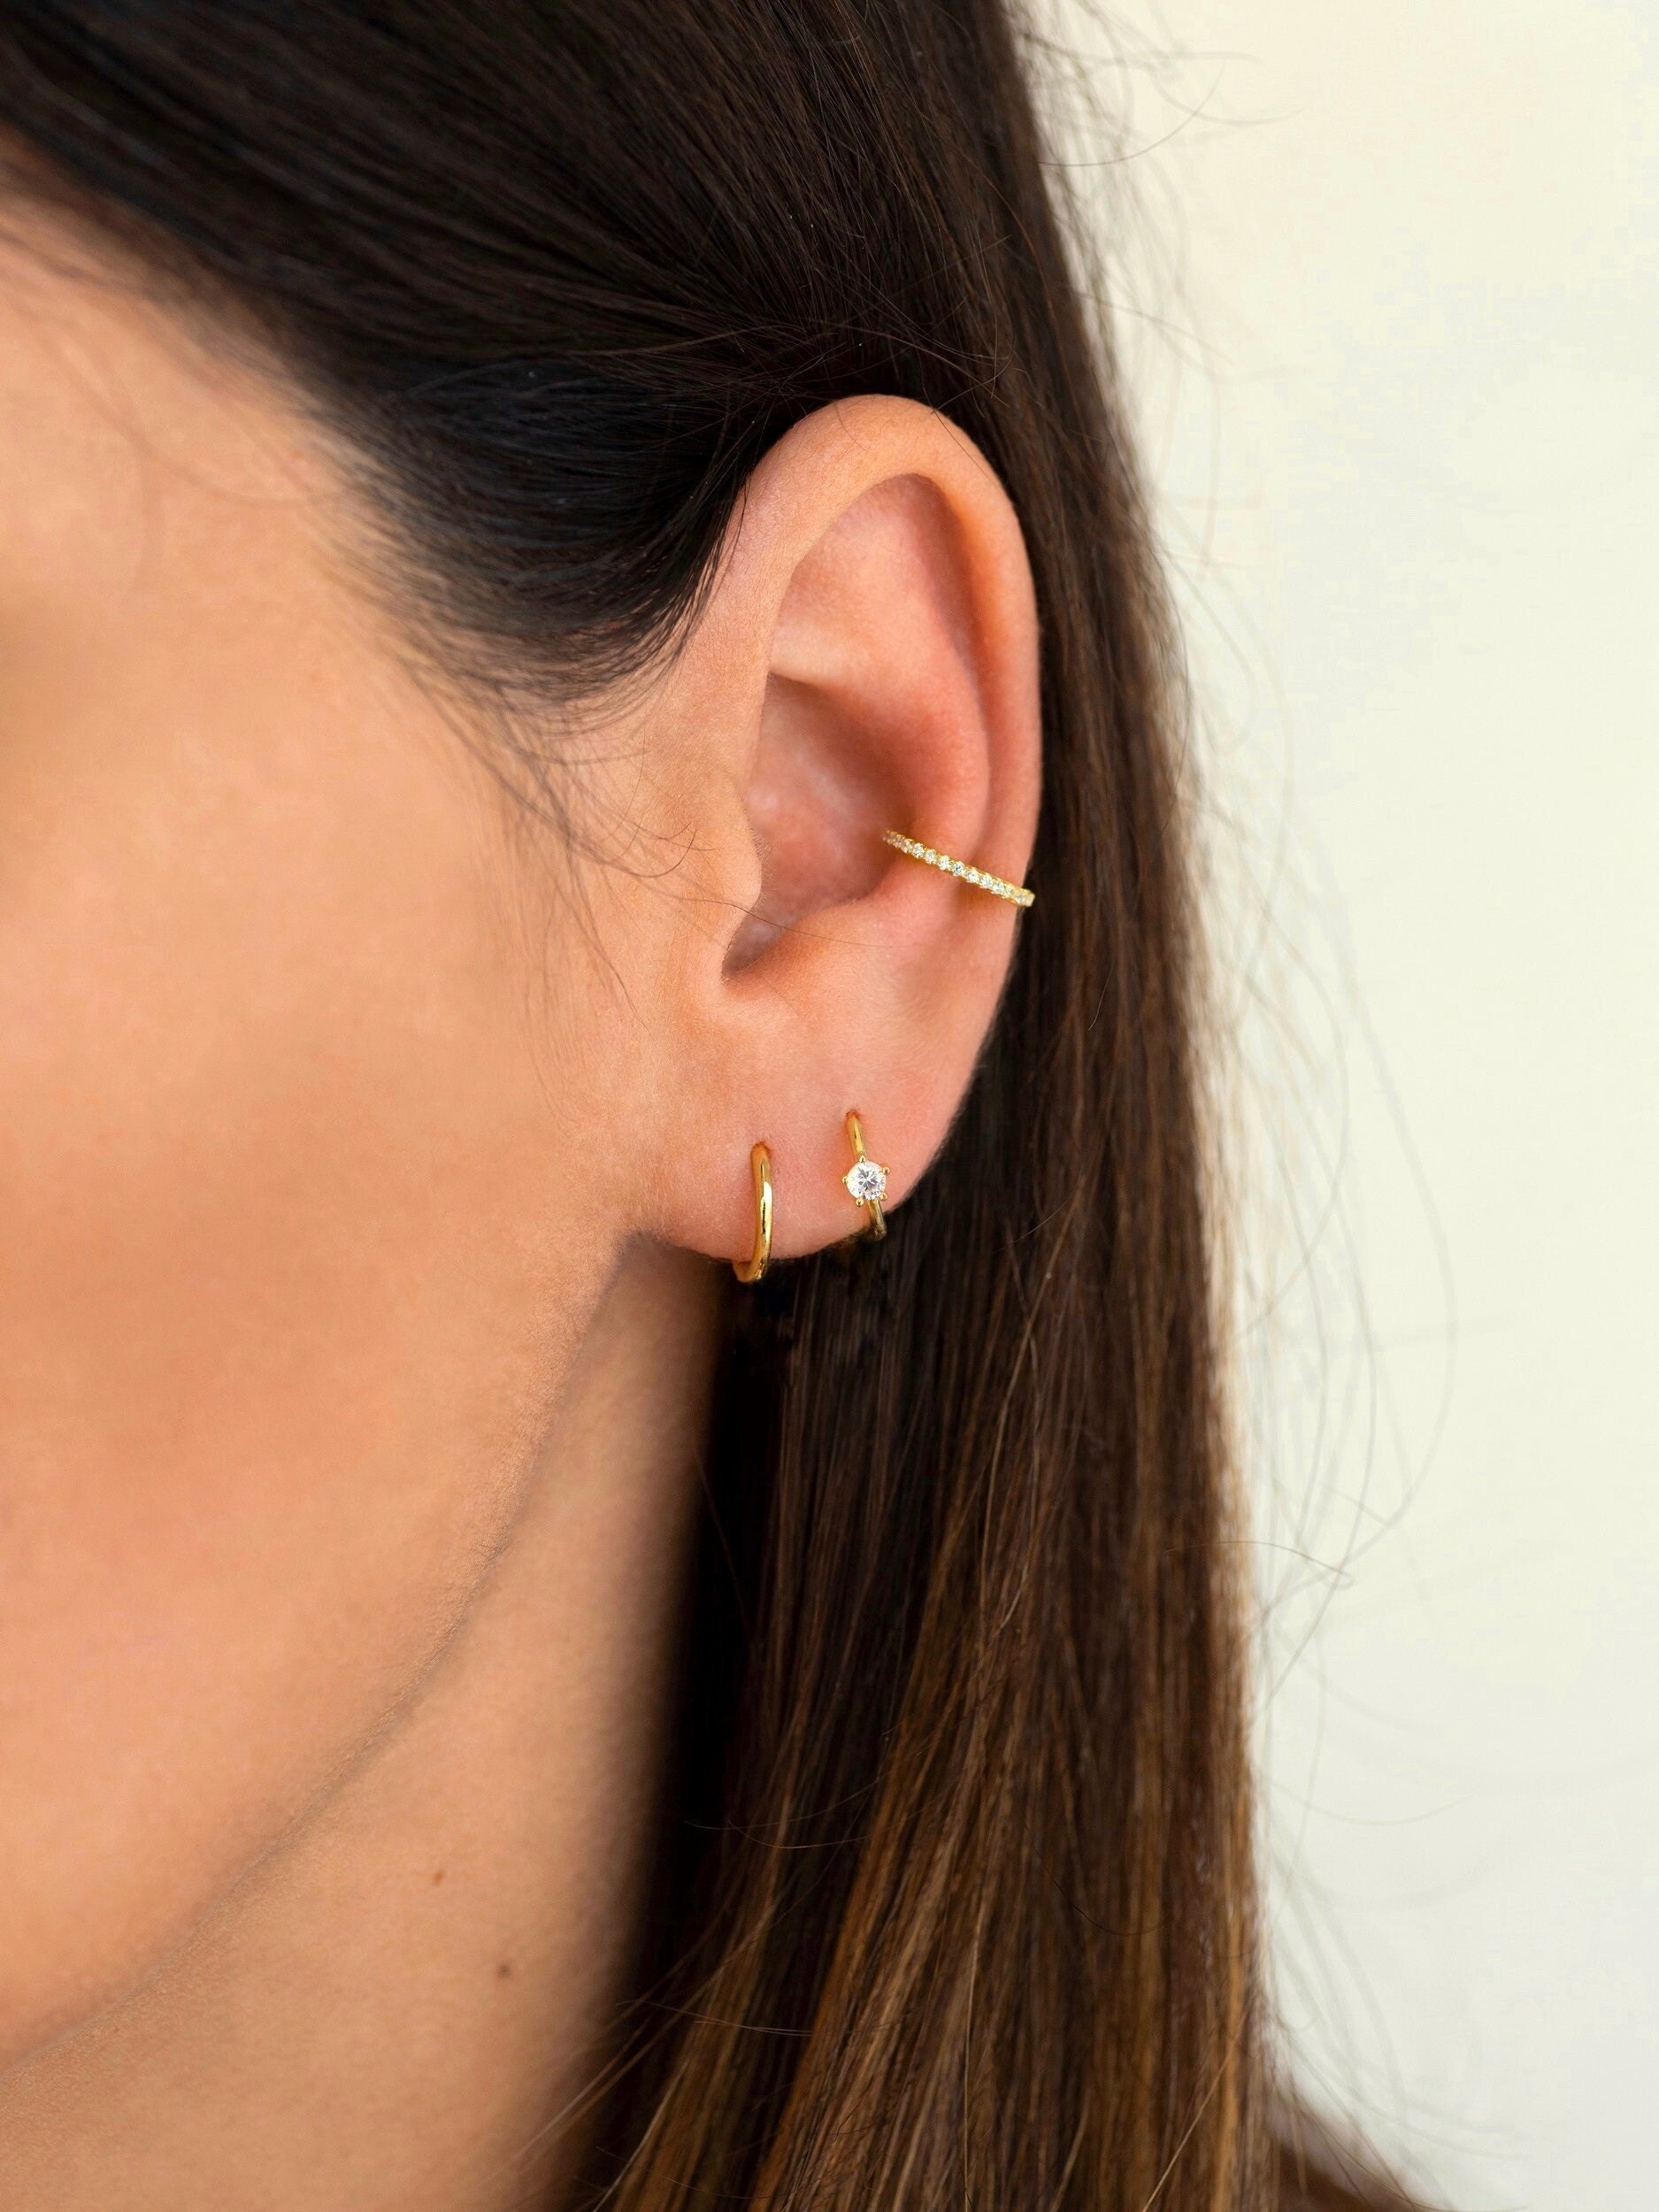 Second Piercing Earrings Cartilage Earrings Tiny Stud Earrings  AMYO  Jewelry